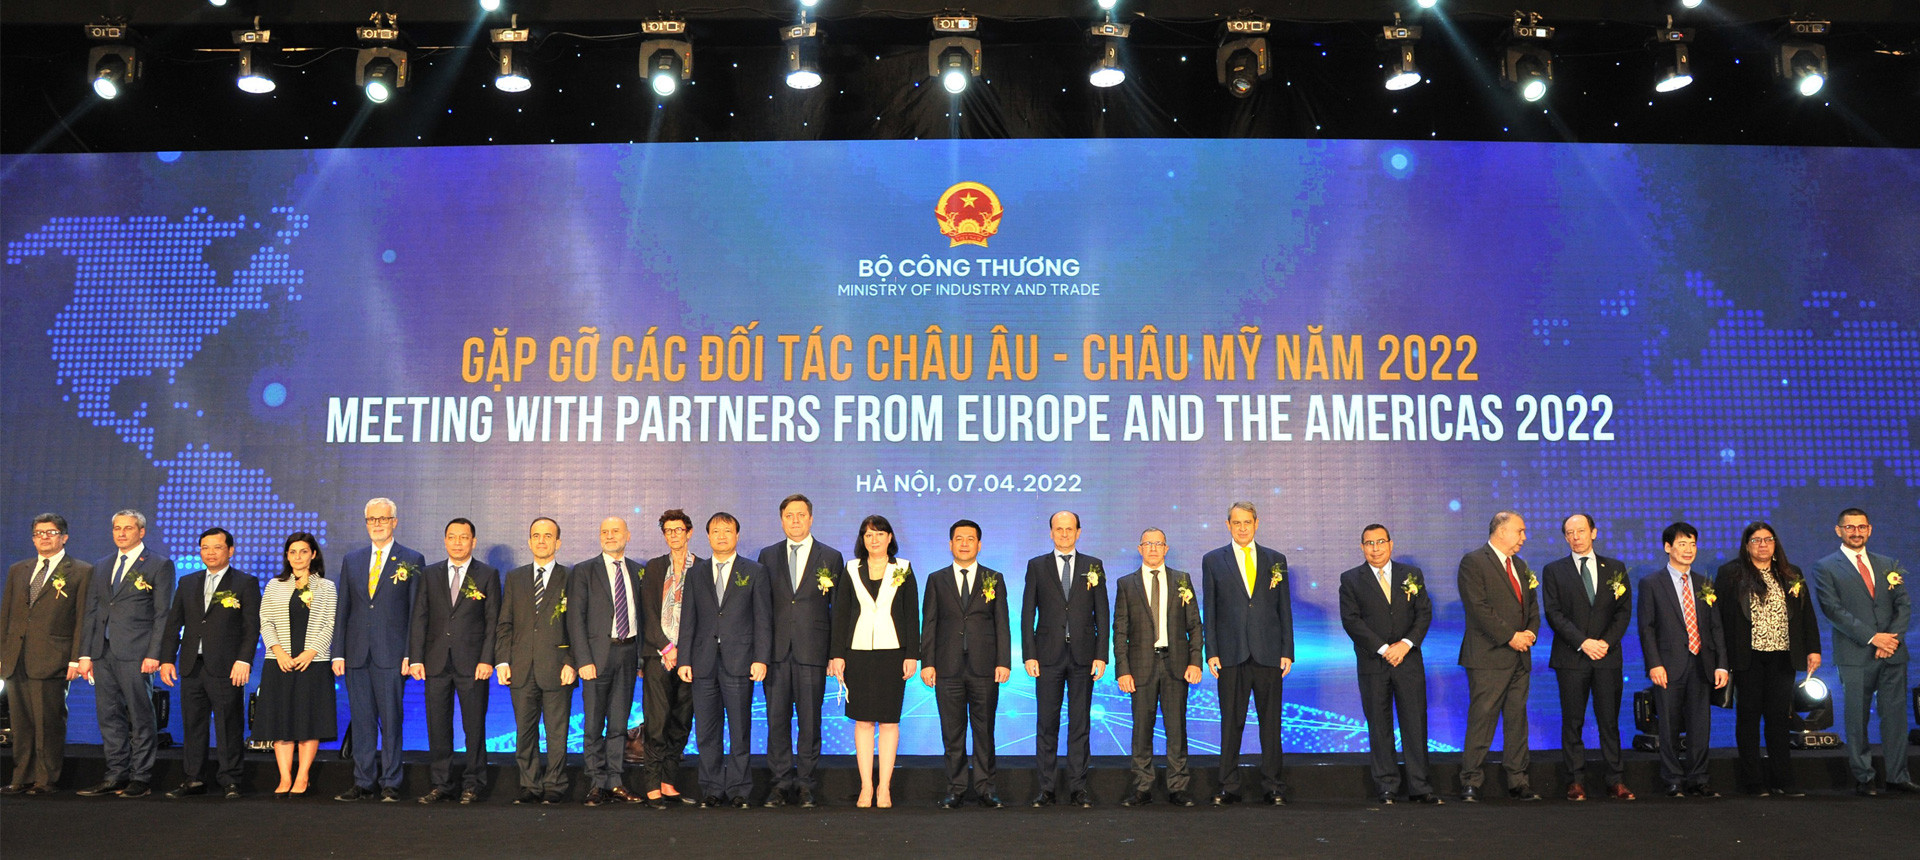 THACO-Industries-tham-dự-Chương-trình-gặp-gỡ-các-đối-tác-châu-Âu---châu-Mỹ-năm-2022